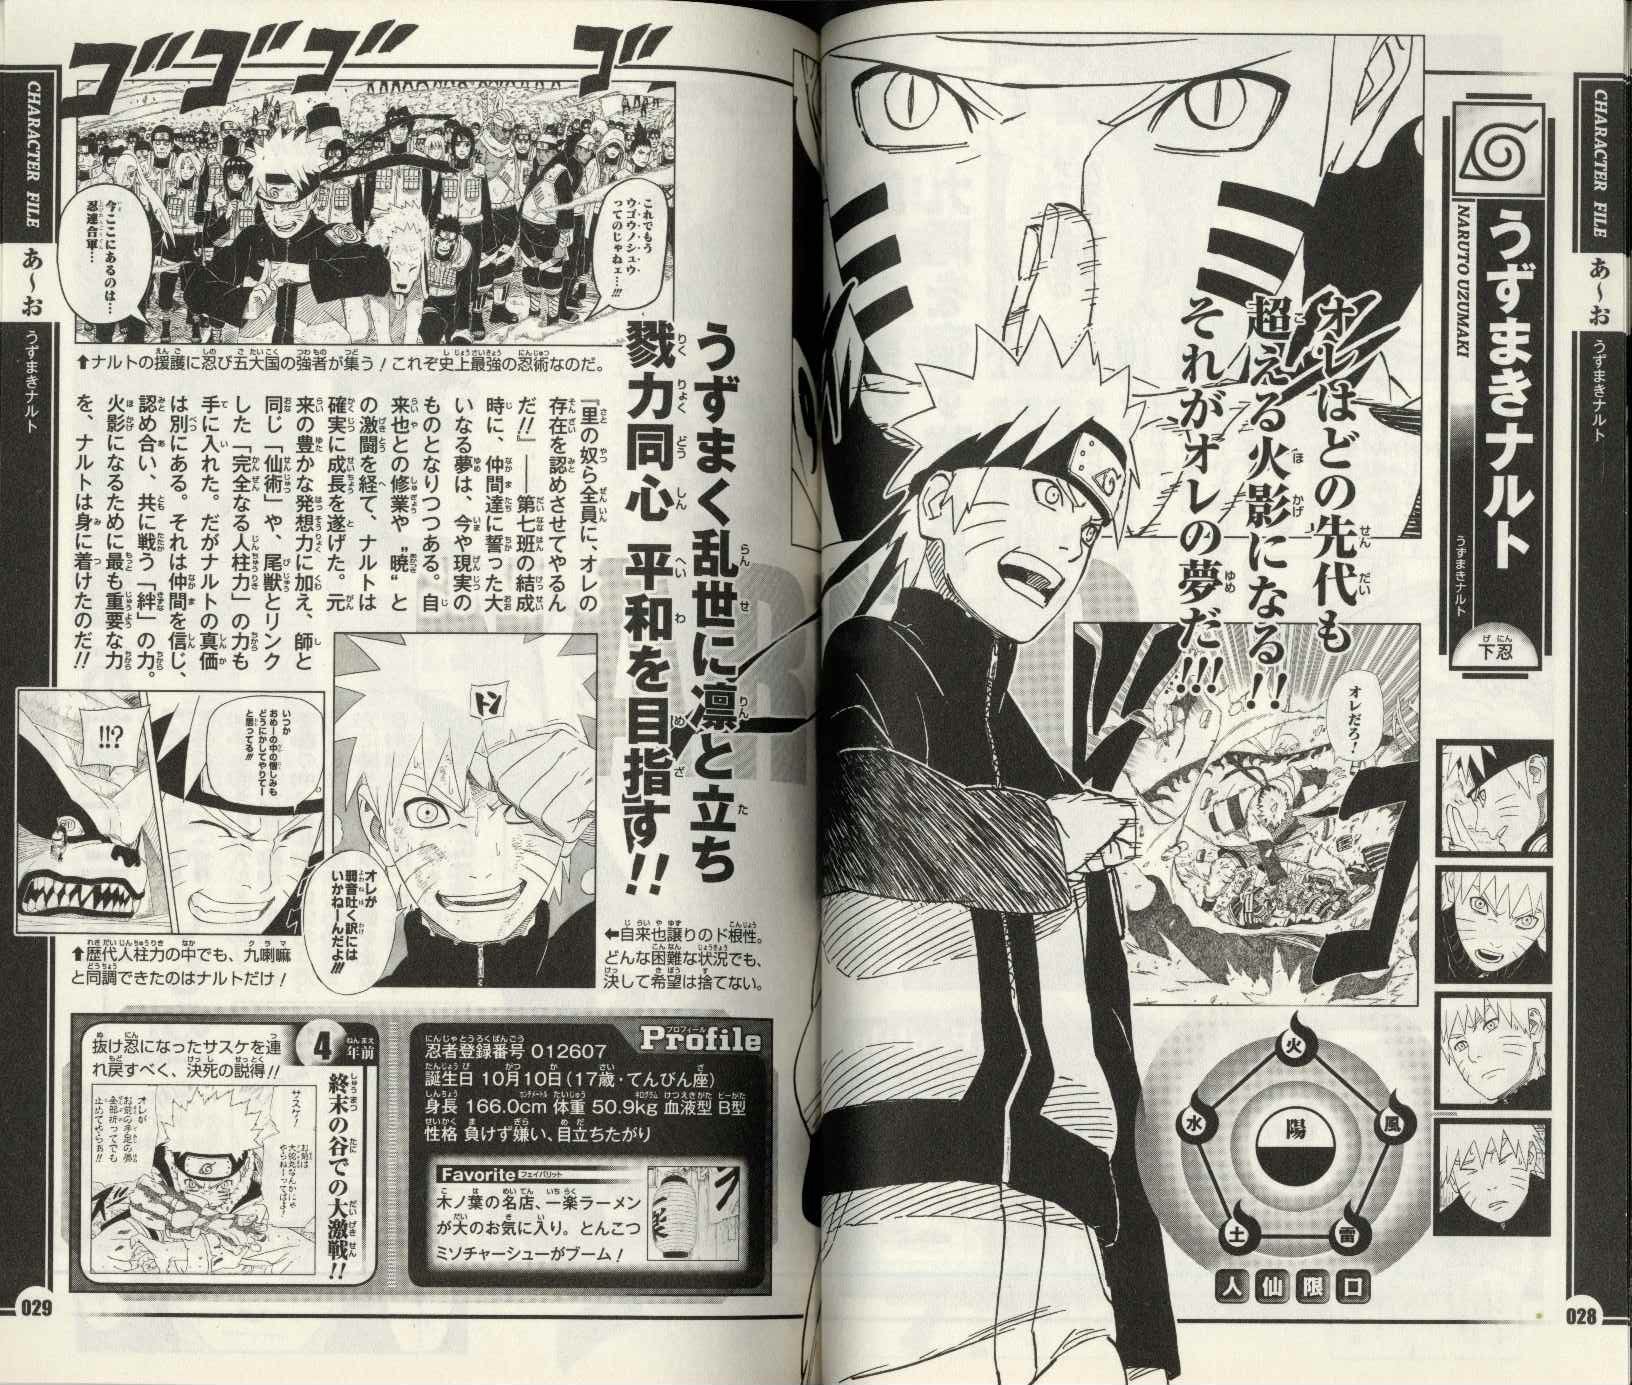 集英社 ジャンプコミックス 岸本斉史 Naruto ナルト オフィシャルファンブック秘伝 陣の書 Mandarake 在线商店